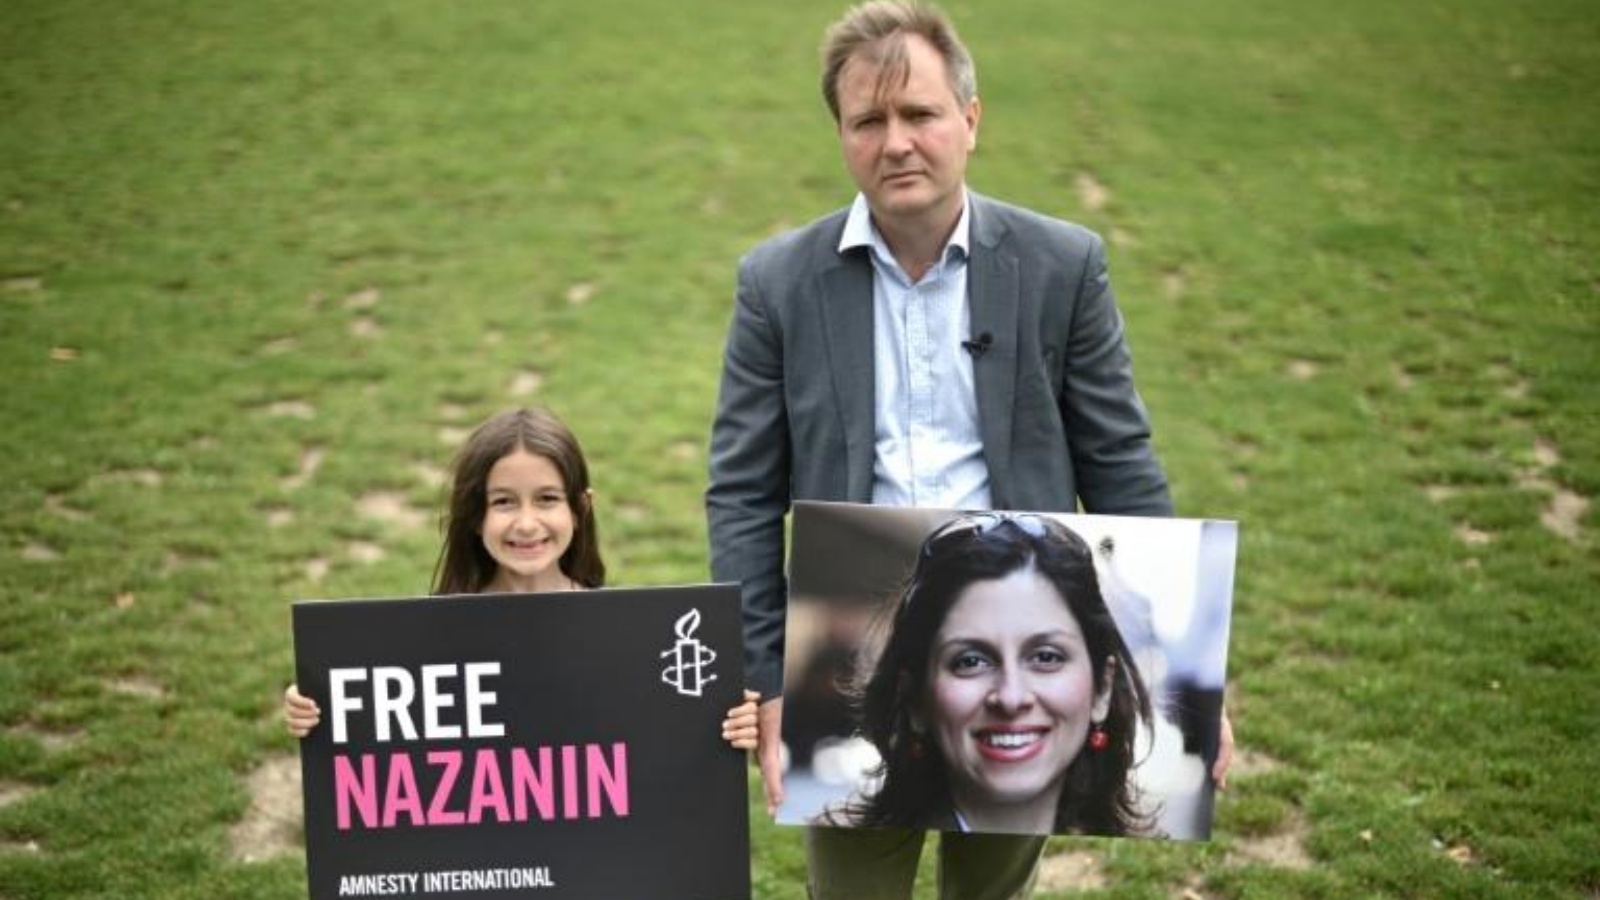 ريتشارد راتكليف وابنته غابرييلا يحملان لافتات في ساحة البرلمان في أيلول/ سبتمبر بمناسبة مرور 2000 يوم على اعتقال نازنين زاغري راتكليف في إيران.